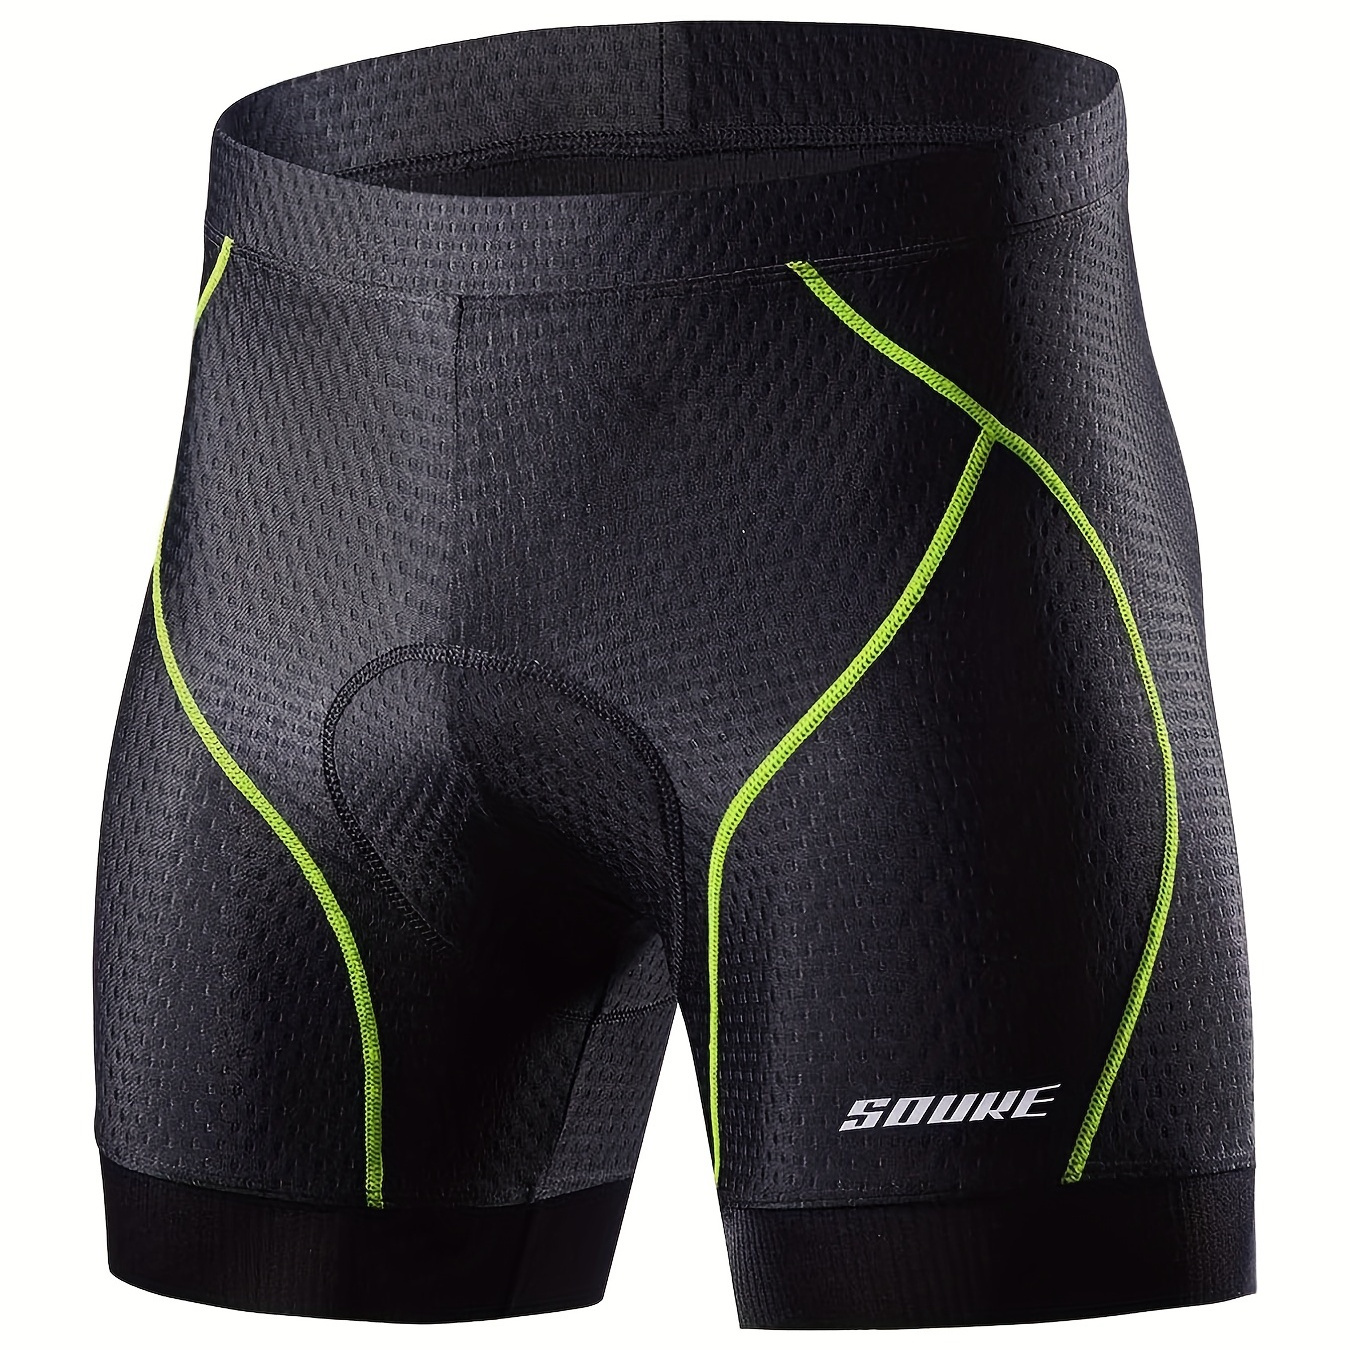  Cycling Underwear